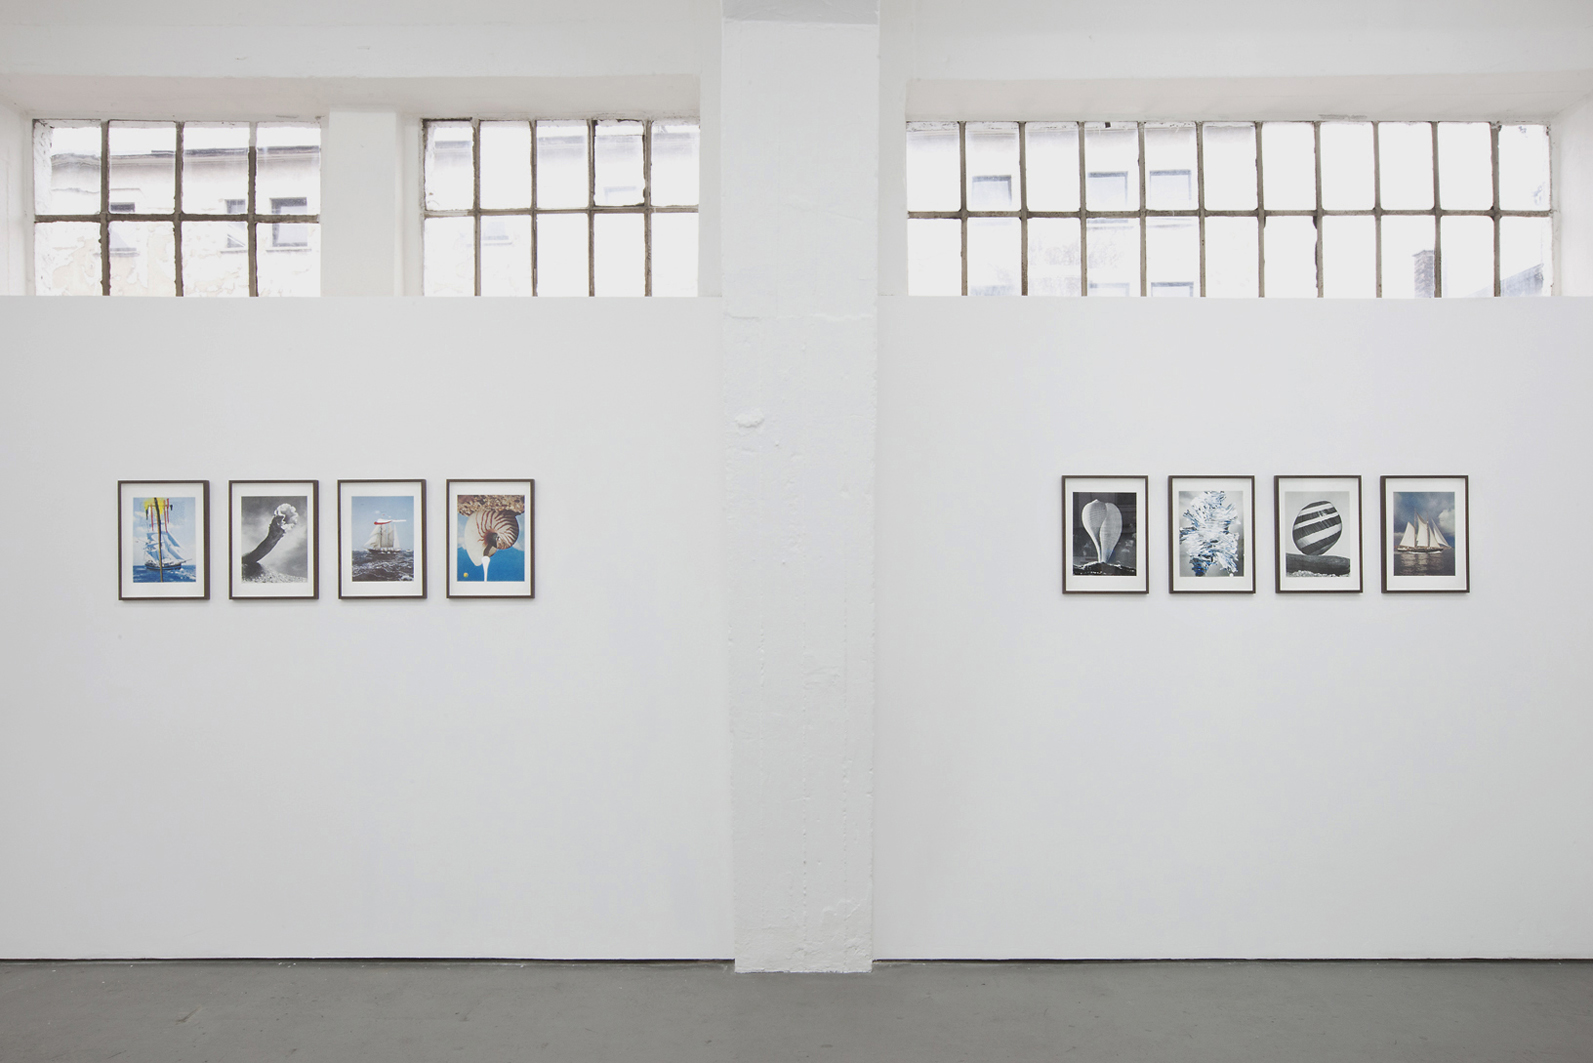  Julien Bismuth: “Catalog”, 2012, Exhibition views Galerie Parisa Kind, Frankfurt am Main 